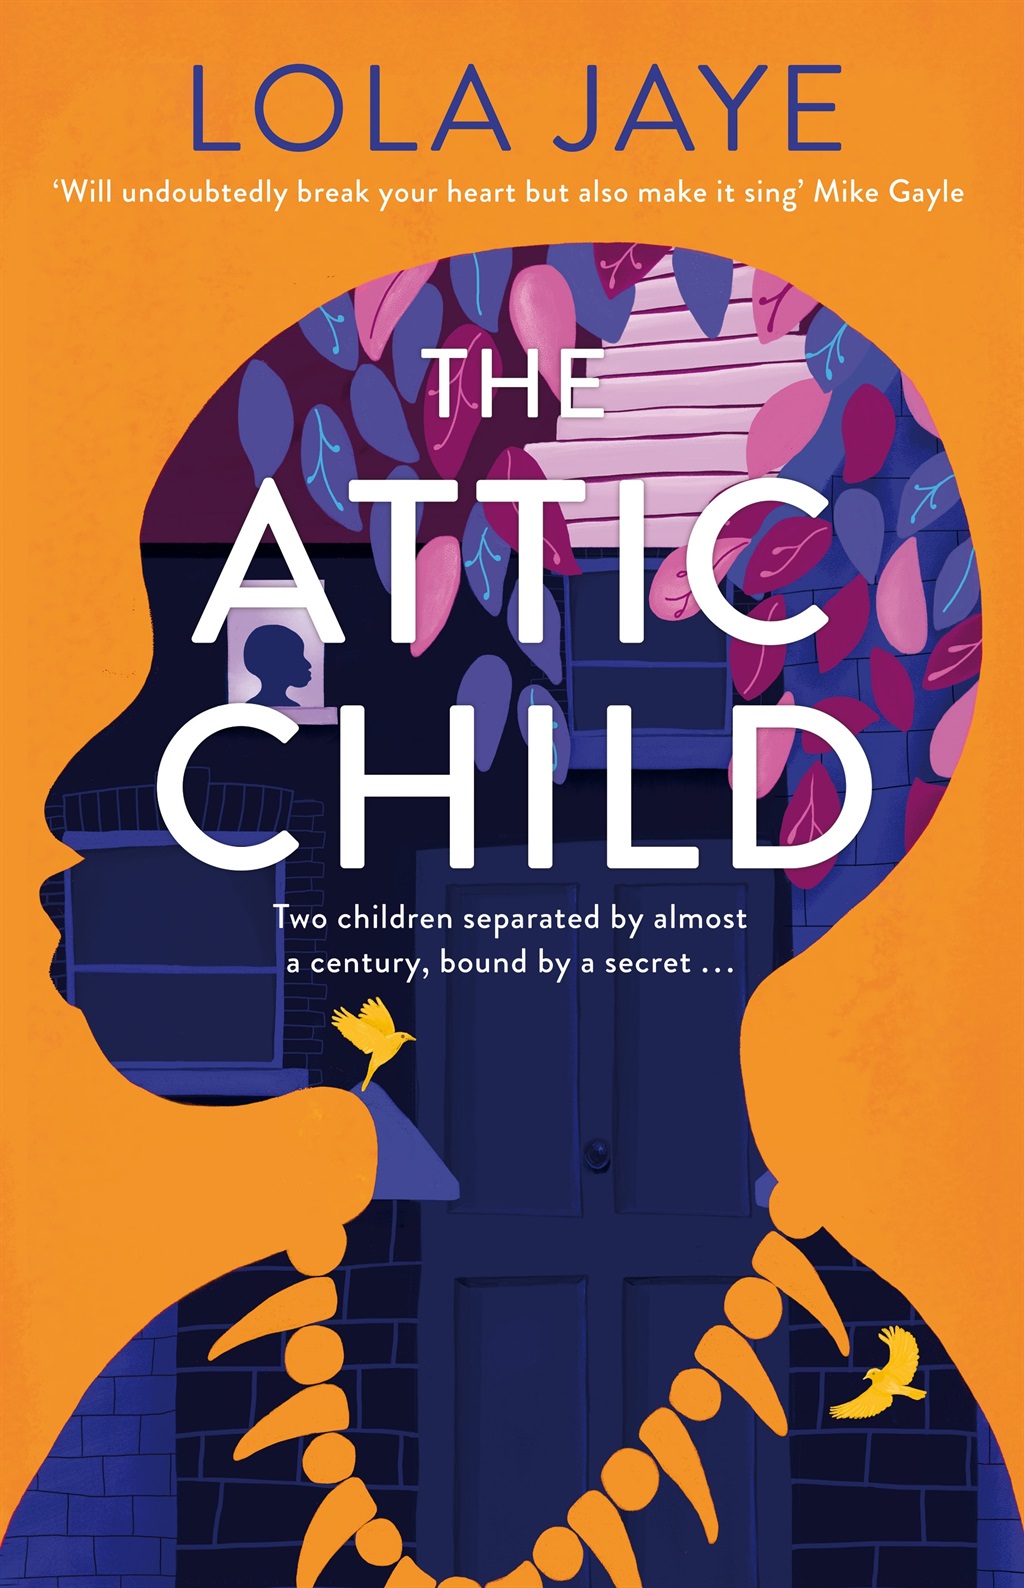 The Attic Child by Lola Jaye (Pan MacMillan)